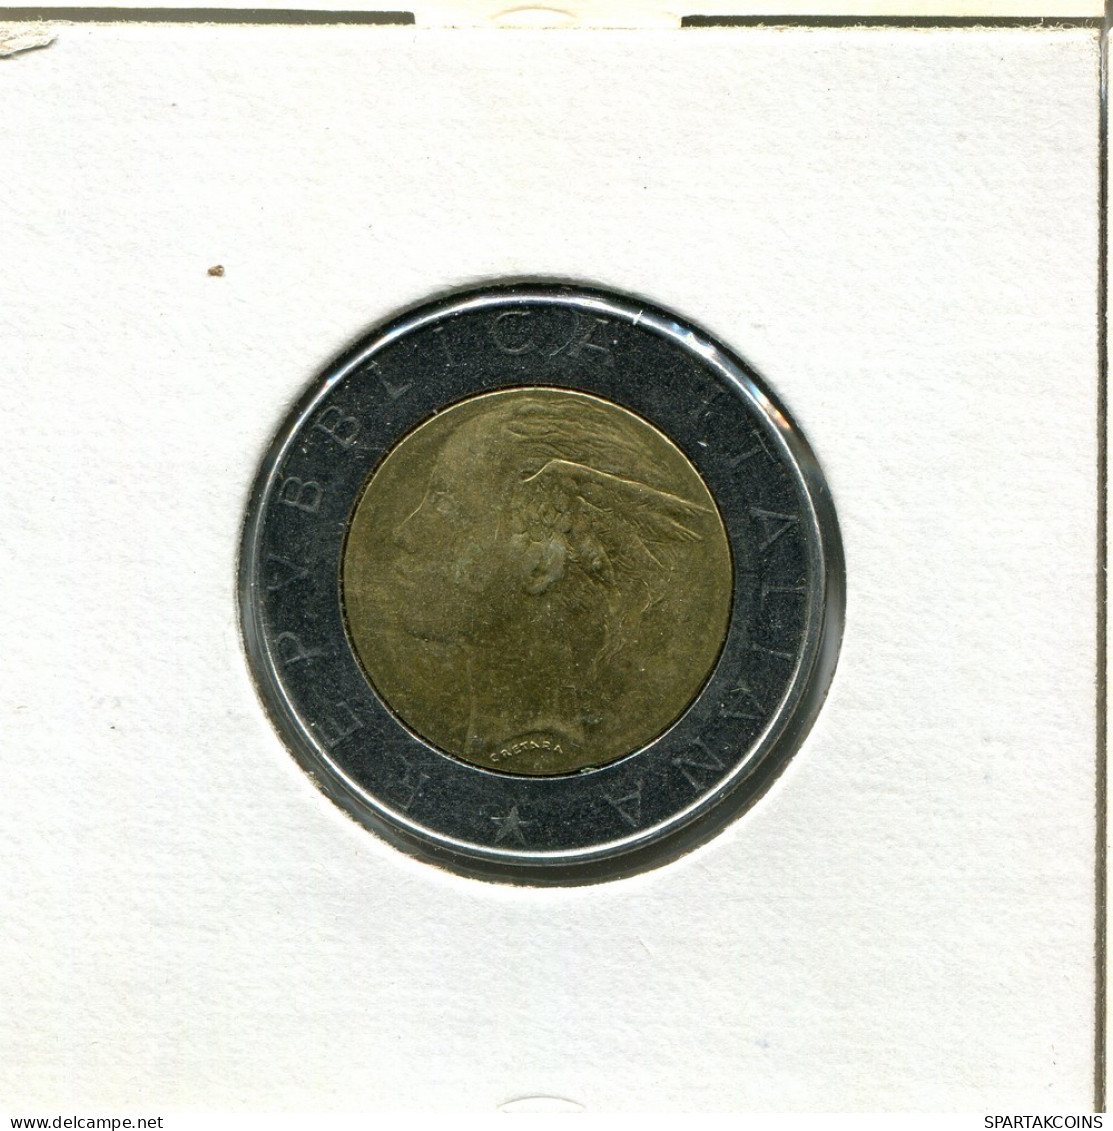 500 LIRE 1986 ITALY Coin BIMETALLIC #AT800.U.A - 500 Lire